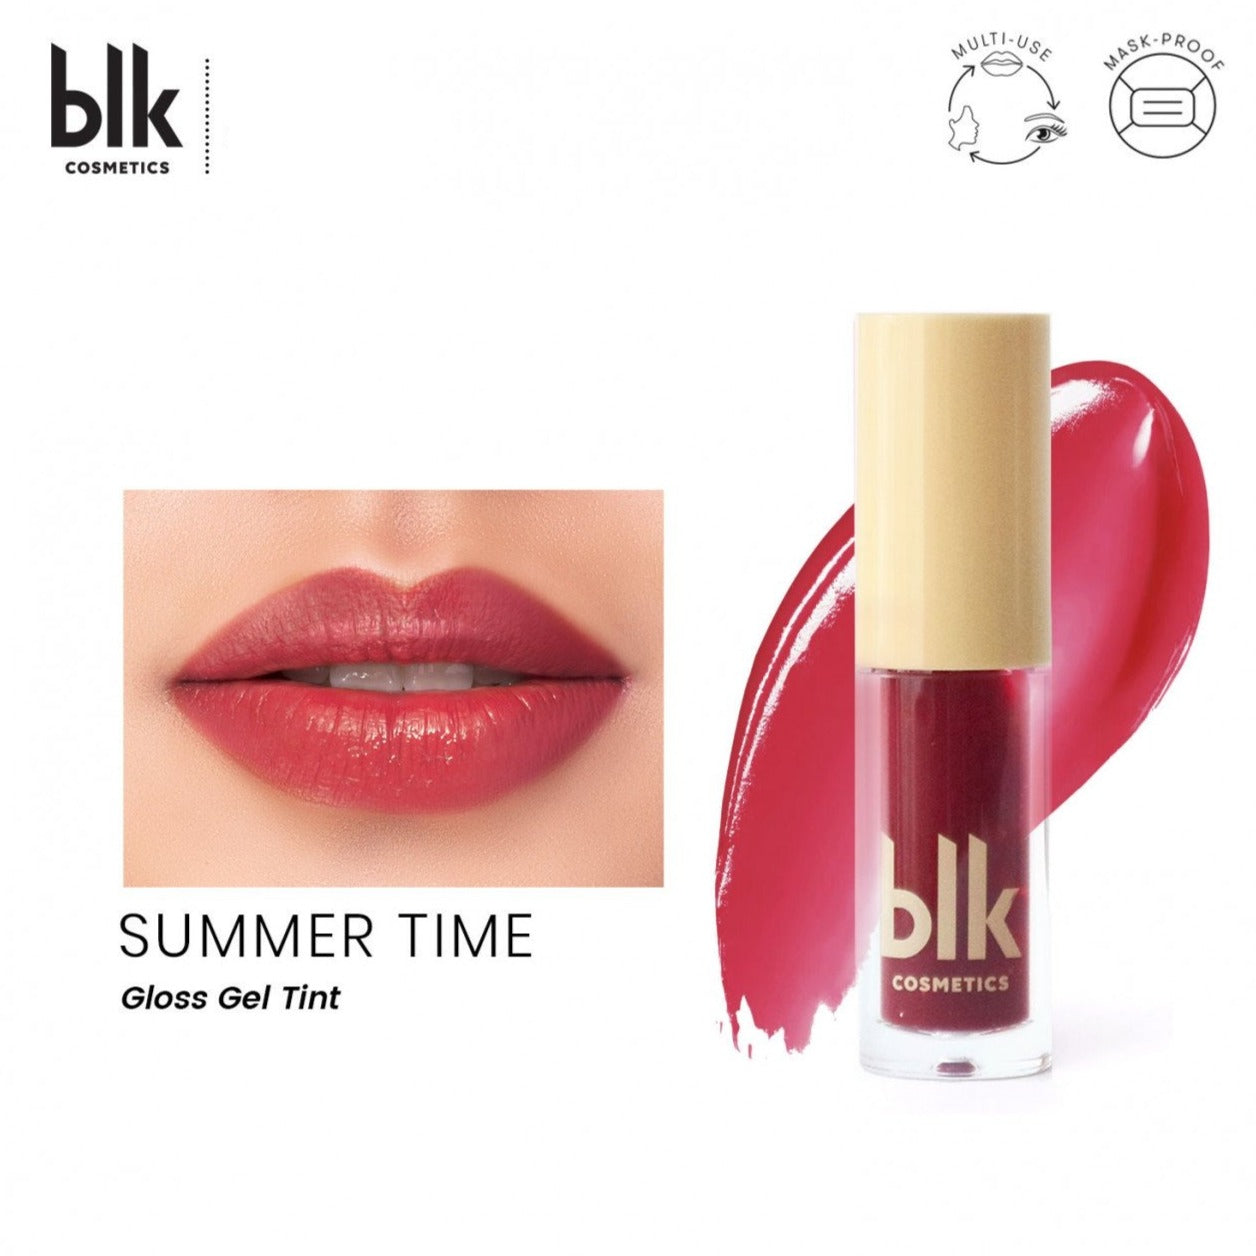 blk Cosmetics Gloss Gel Tint (Summer Time)